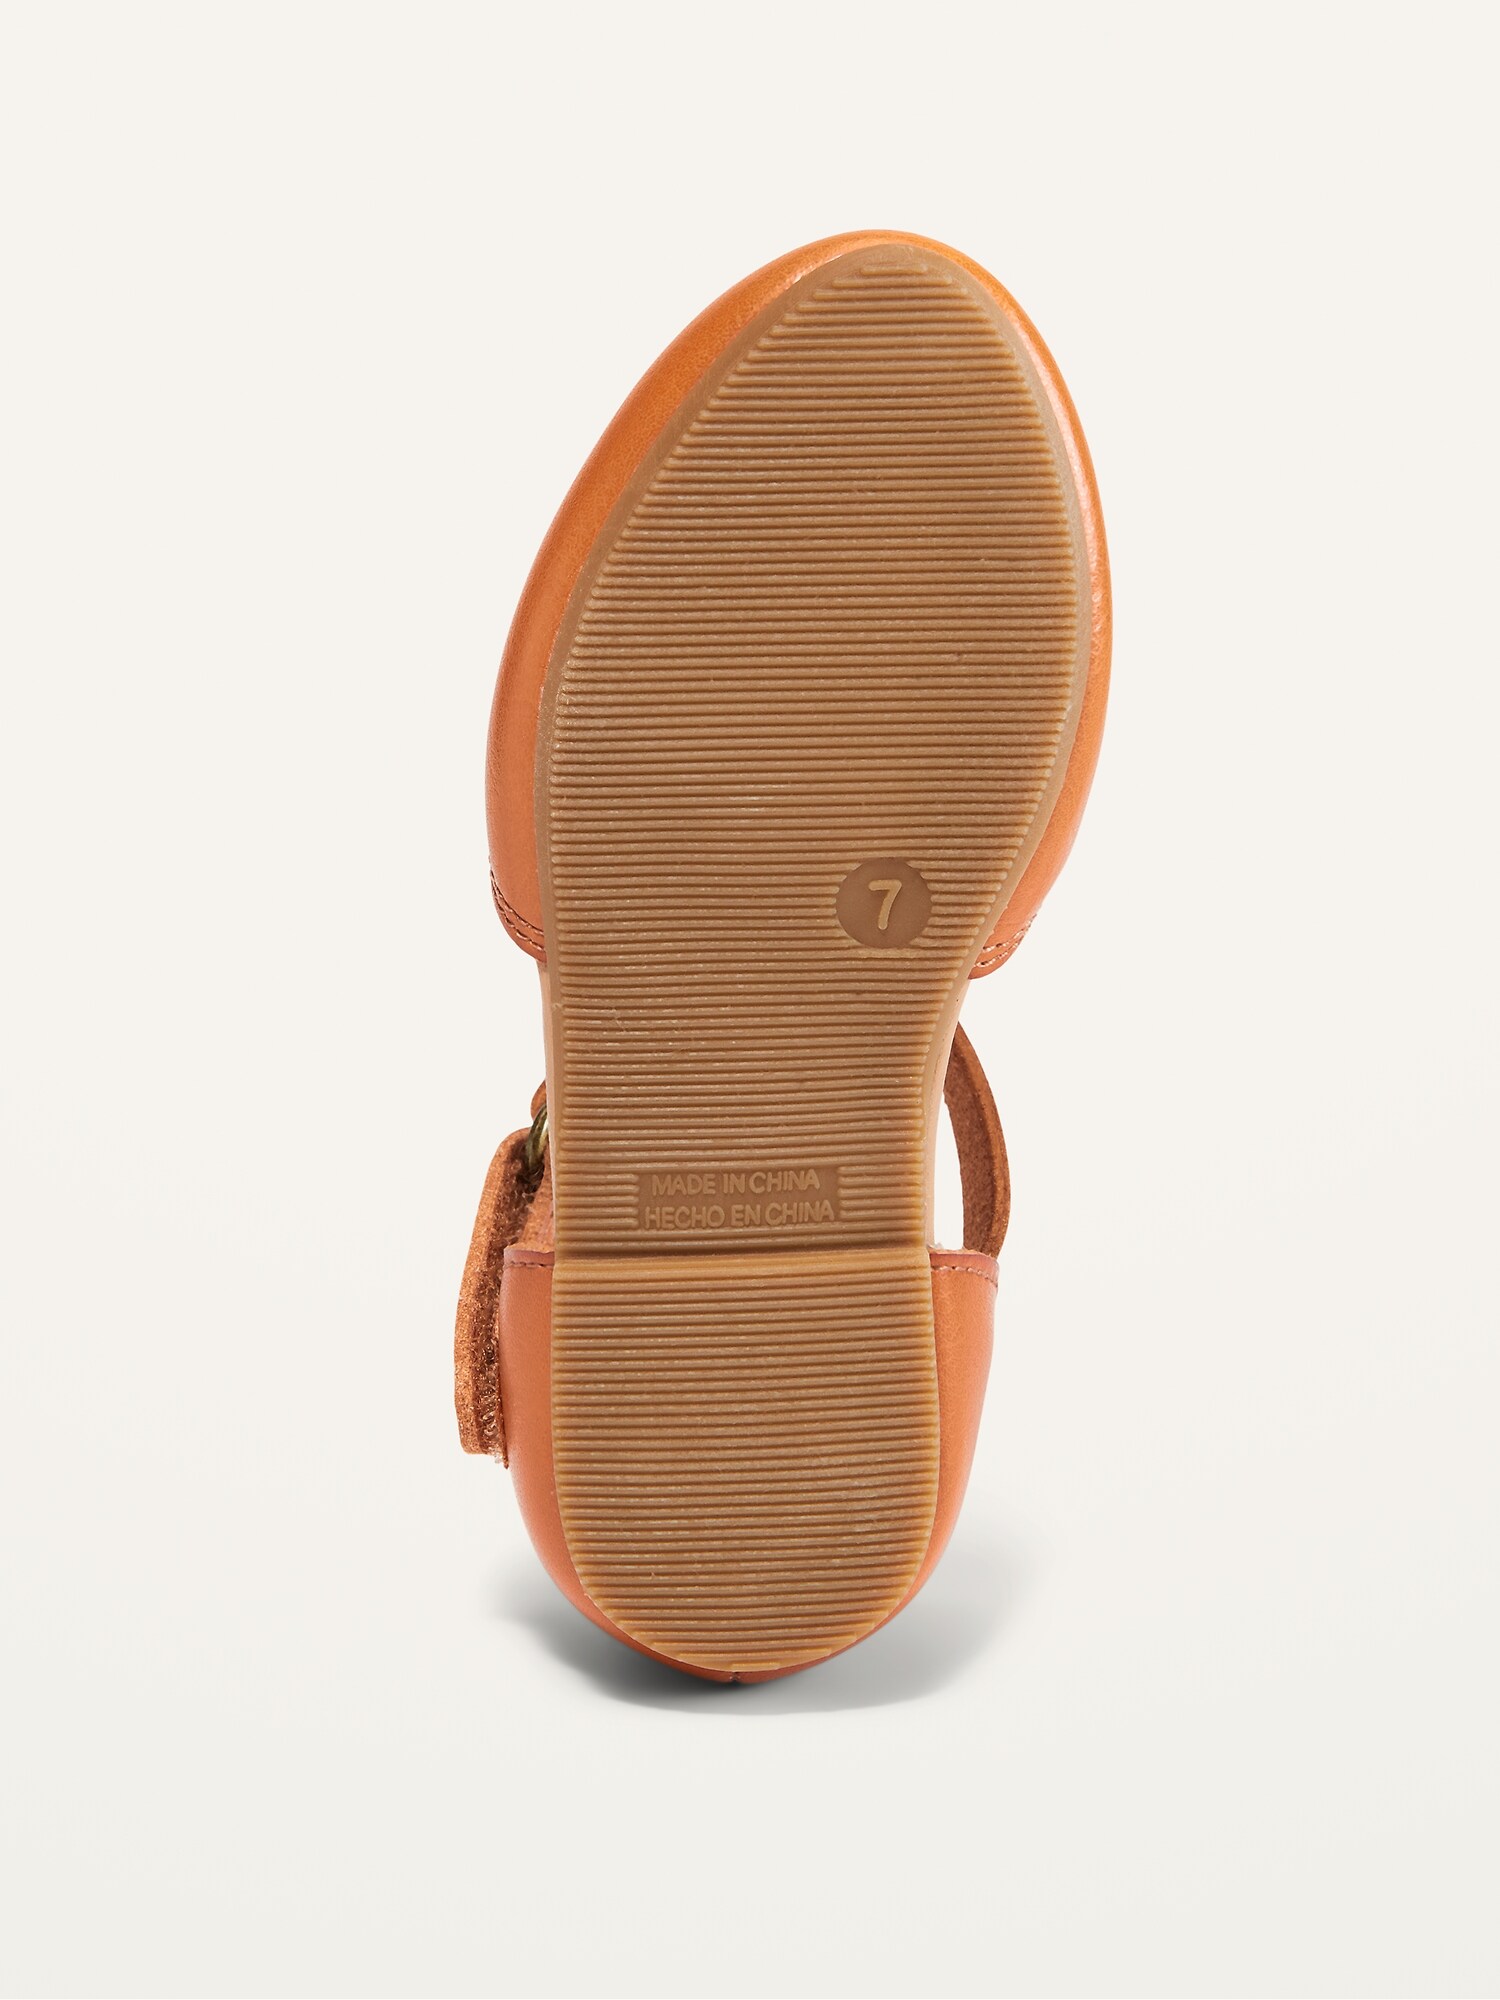 faux leather huarache sandals